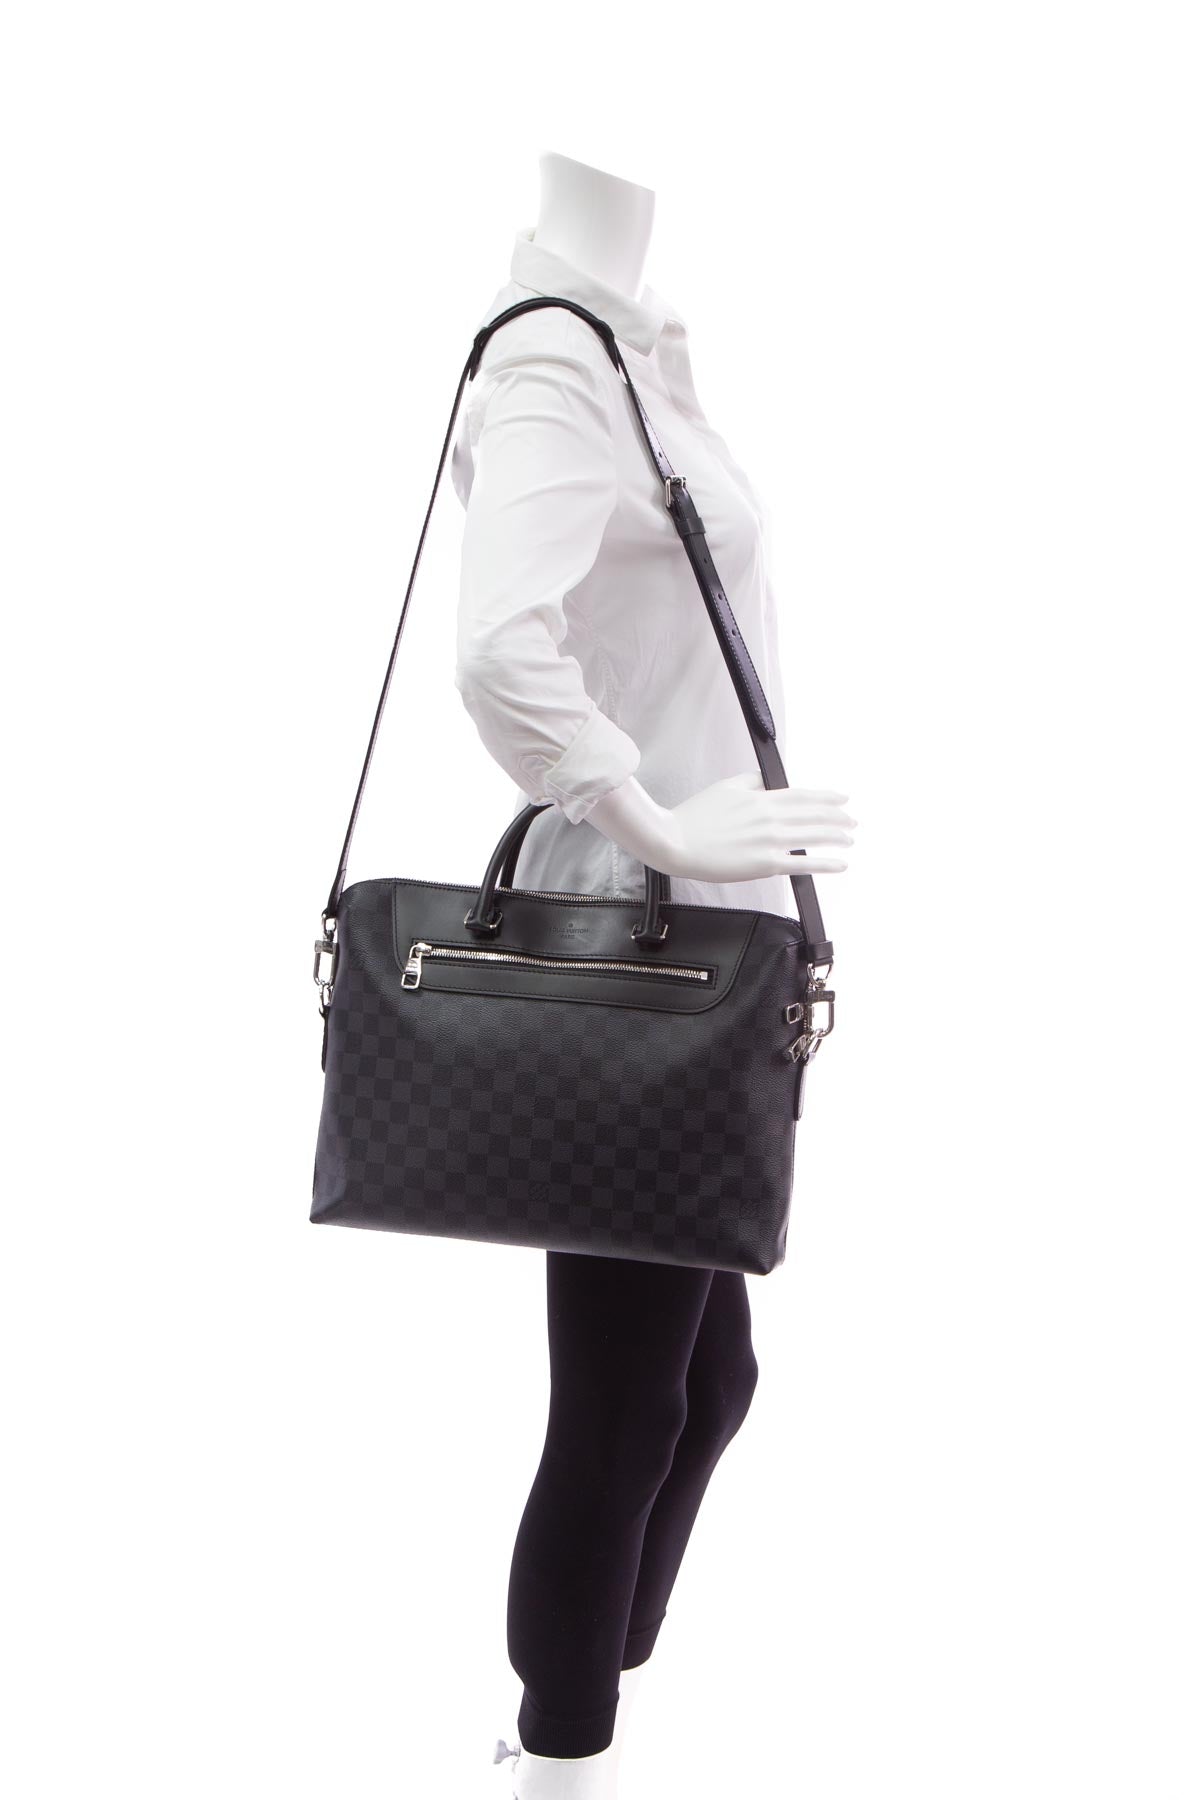 Louis+Vuitton+Porte+Documents+Jour+Briefcase+Document+Case+Black+Leather  for sale online